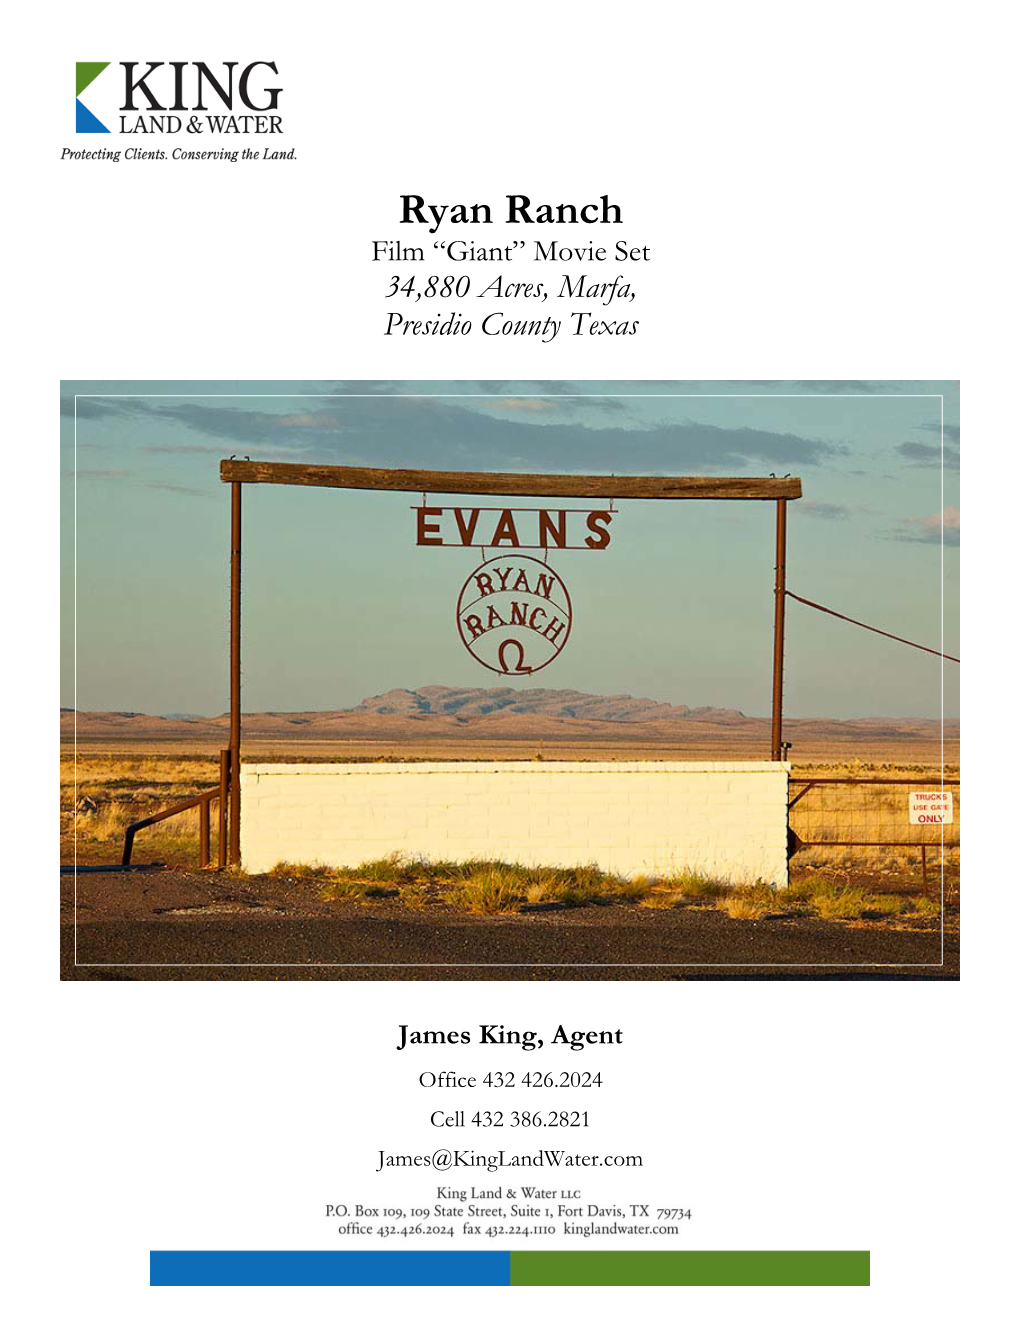 Ryan Ranch Film “Giant” Movie Set 34,880 Acres, Marfa, Presidio County Texas